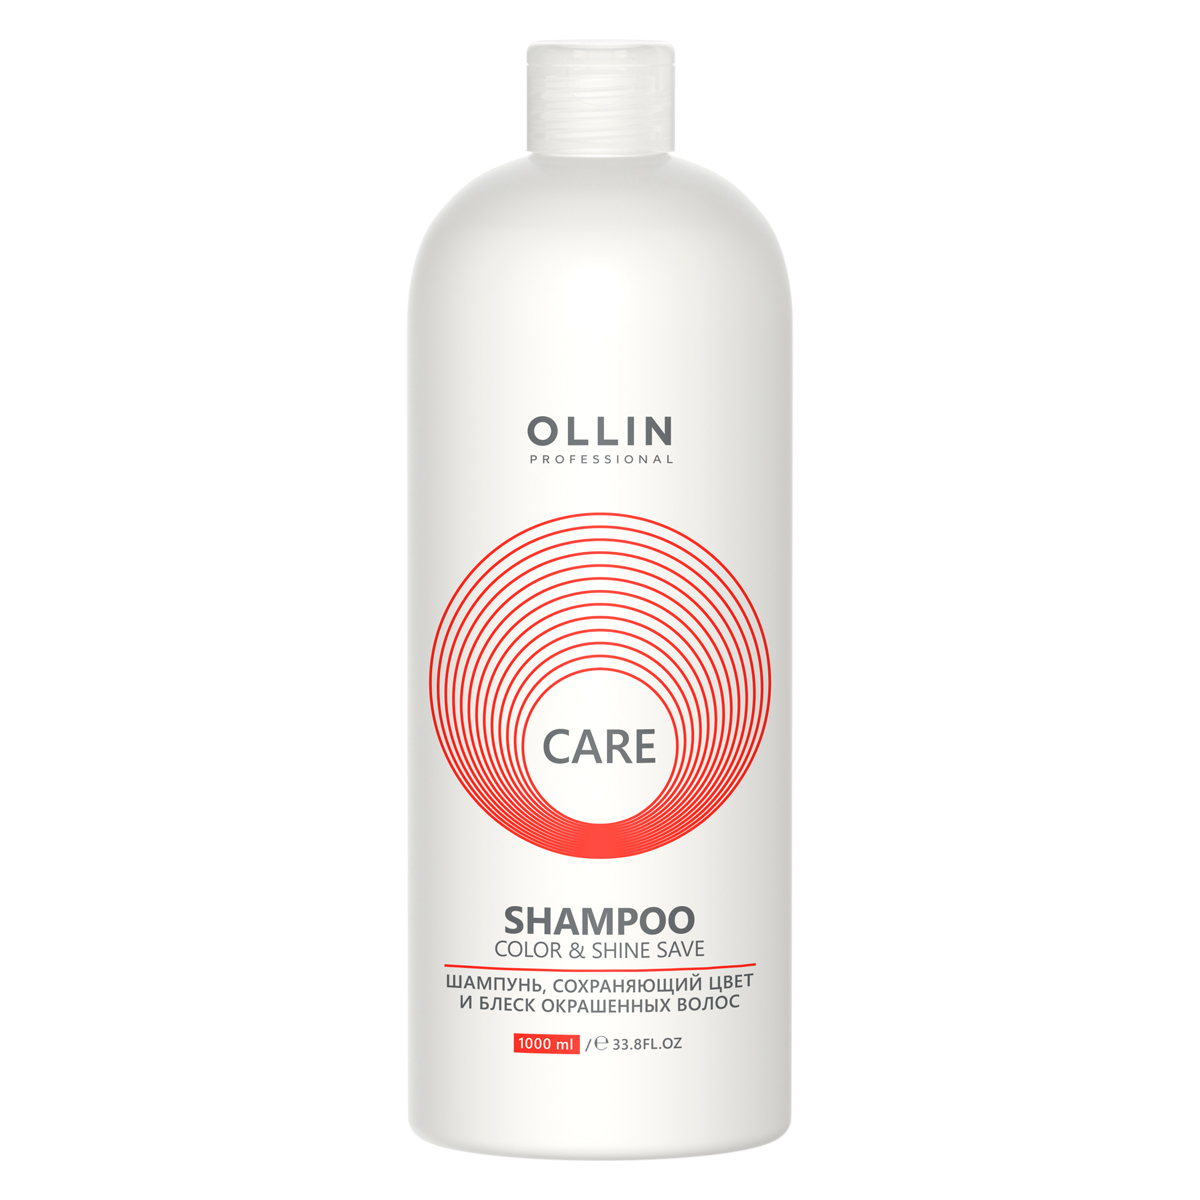 Ollin Professional Шампунь, сохраняющий цвет и блеск окрашенных волос, 1000 мл (Ollin Professional, Care) фото